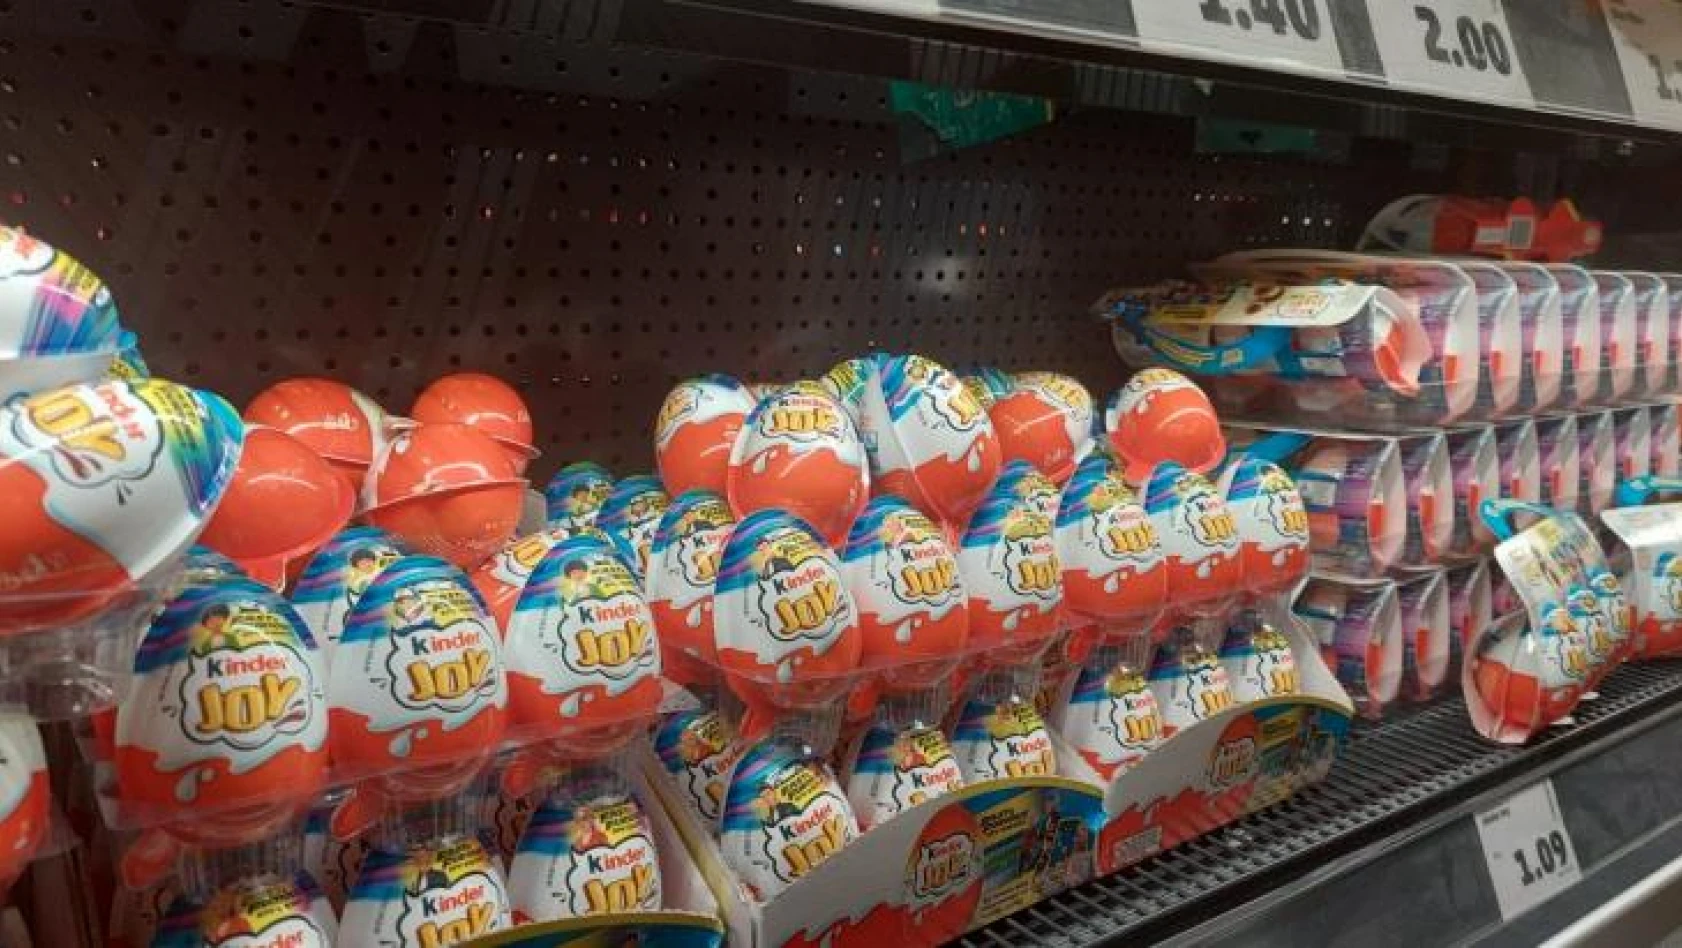 Almanya'da, Salmonella bakterisi tespit edilen Kinder sürpriz yumurtaları yerine 'Kinder Joy' satılıyor